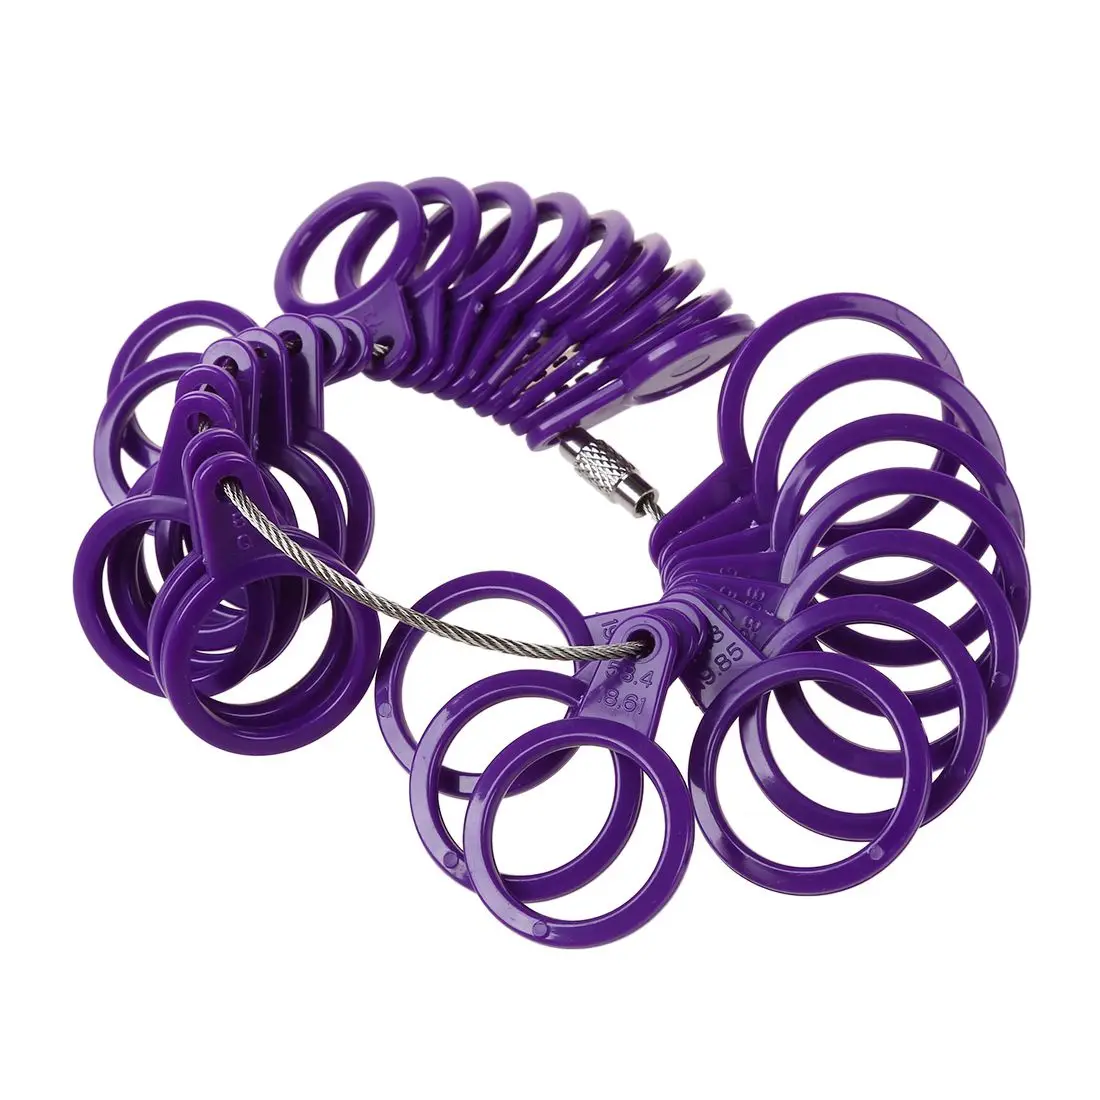 US пластиковый измеритель пальца кольцо масса 3-13 набор фиолетовых ювелирных инструментов